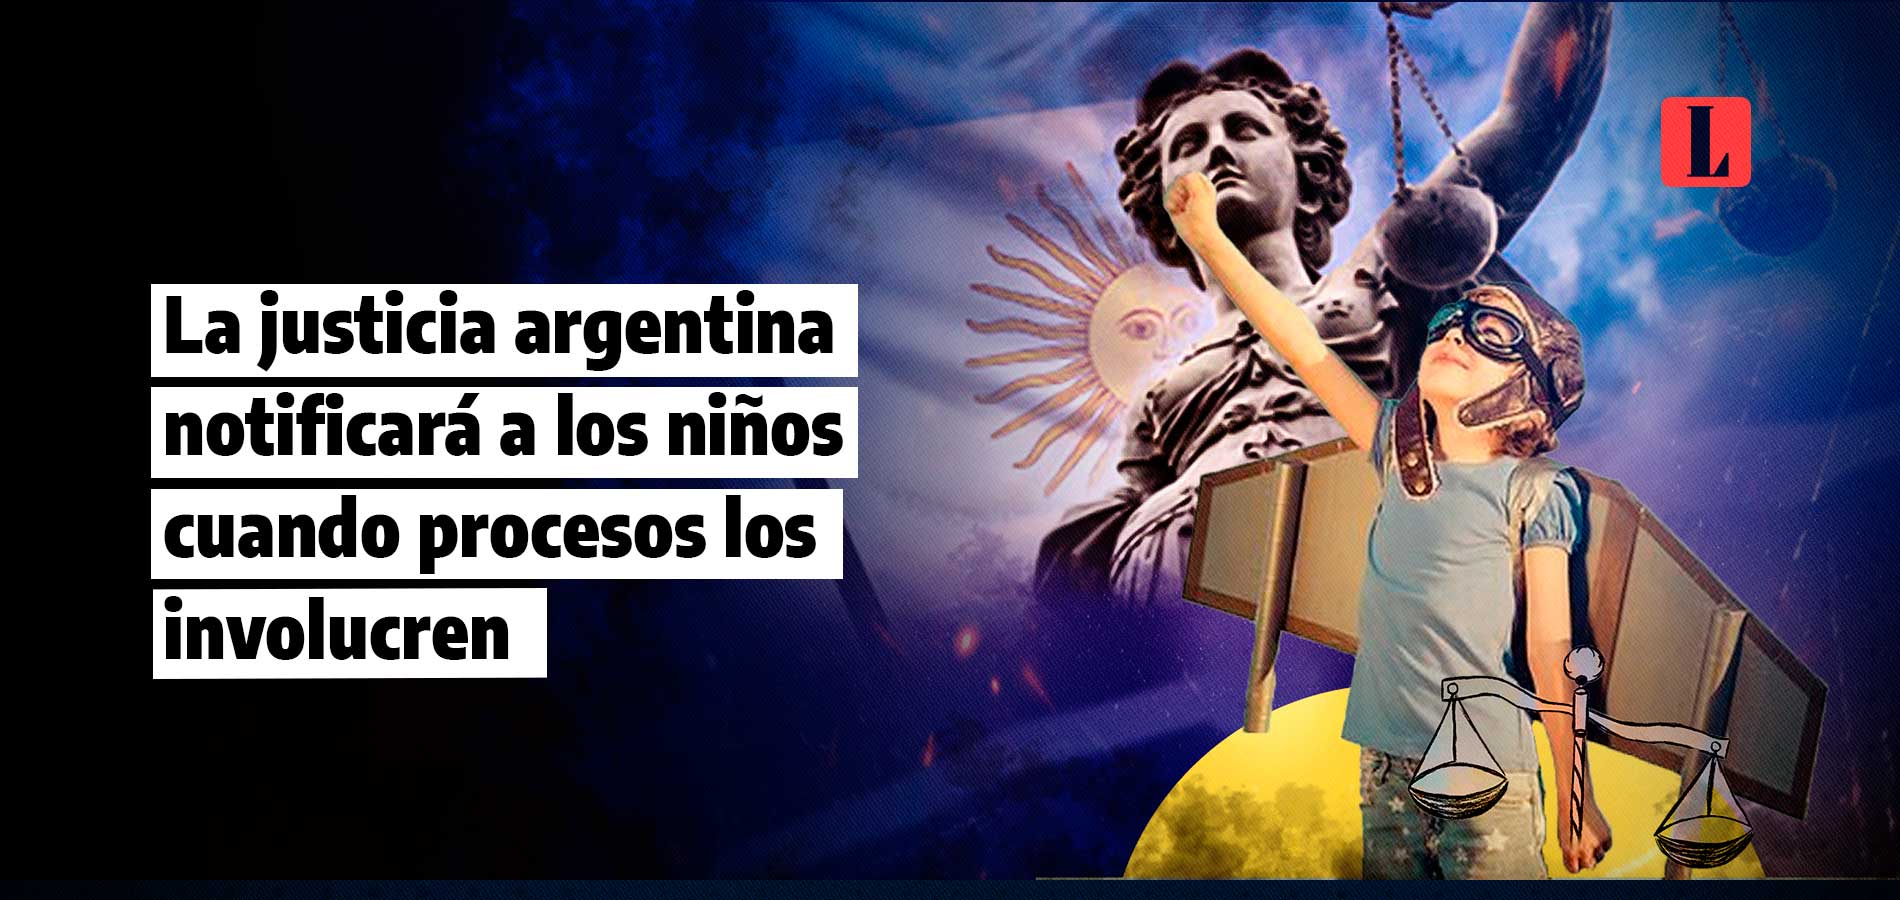 La justicia argentina notificará a los niños cuando procesos los involucren